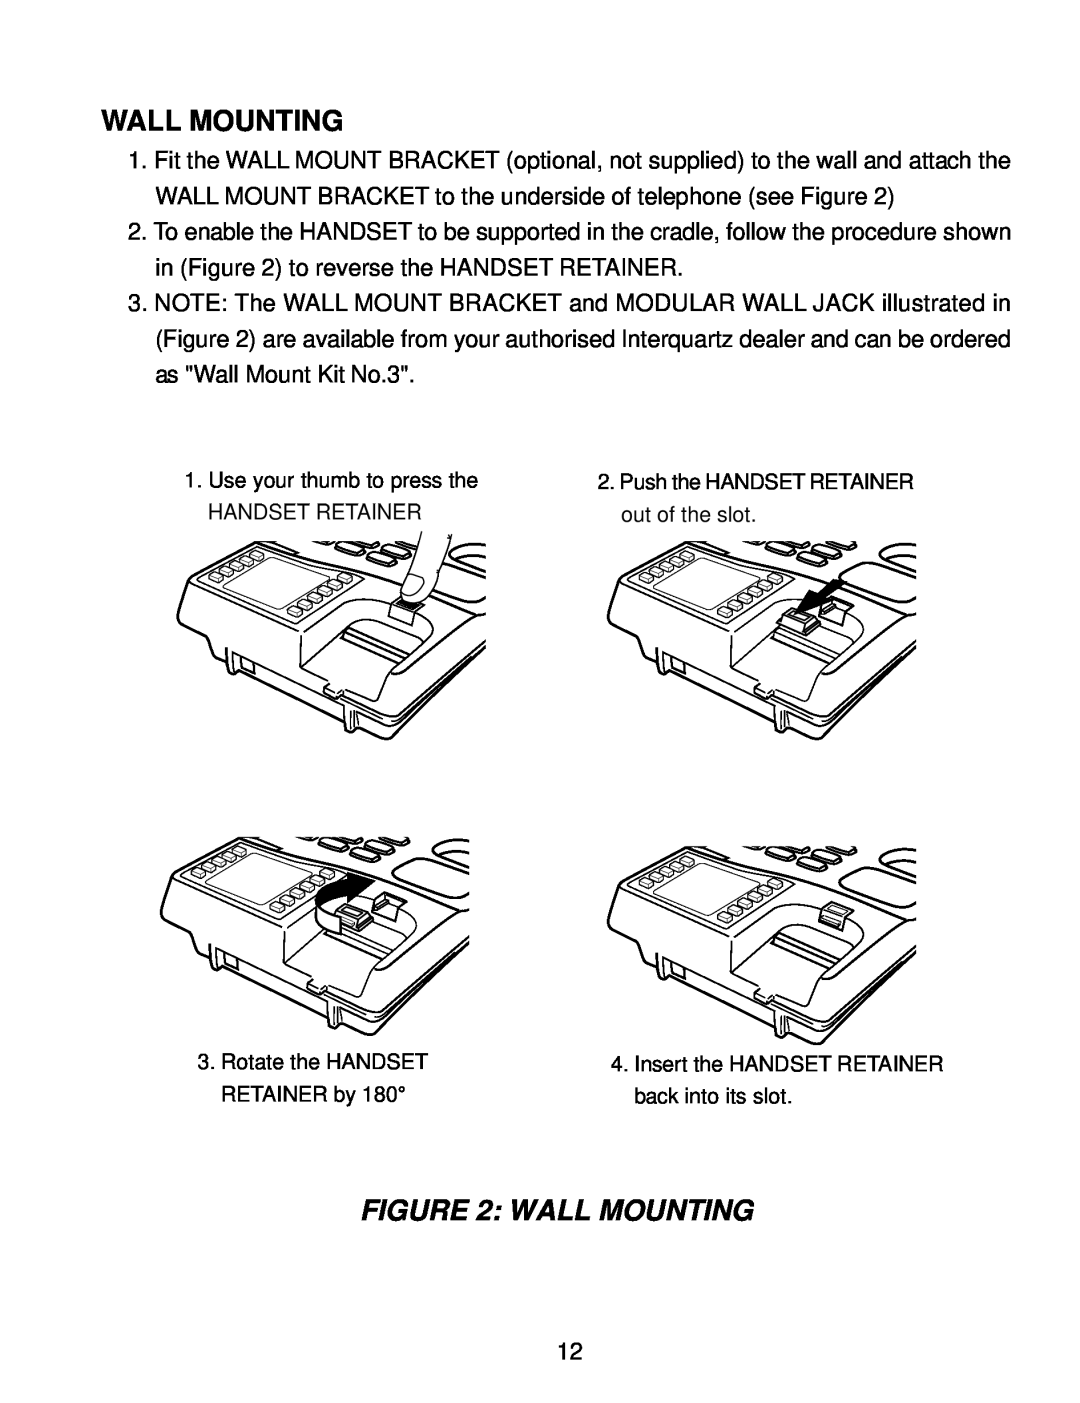 Interquartz IQ331 manual Wall Mounting 